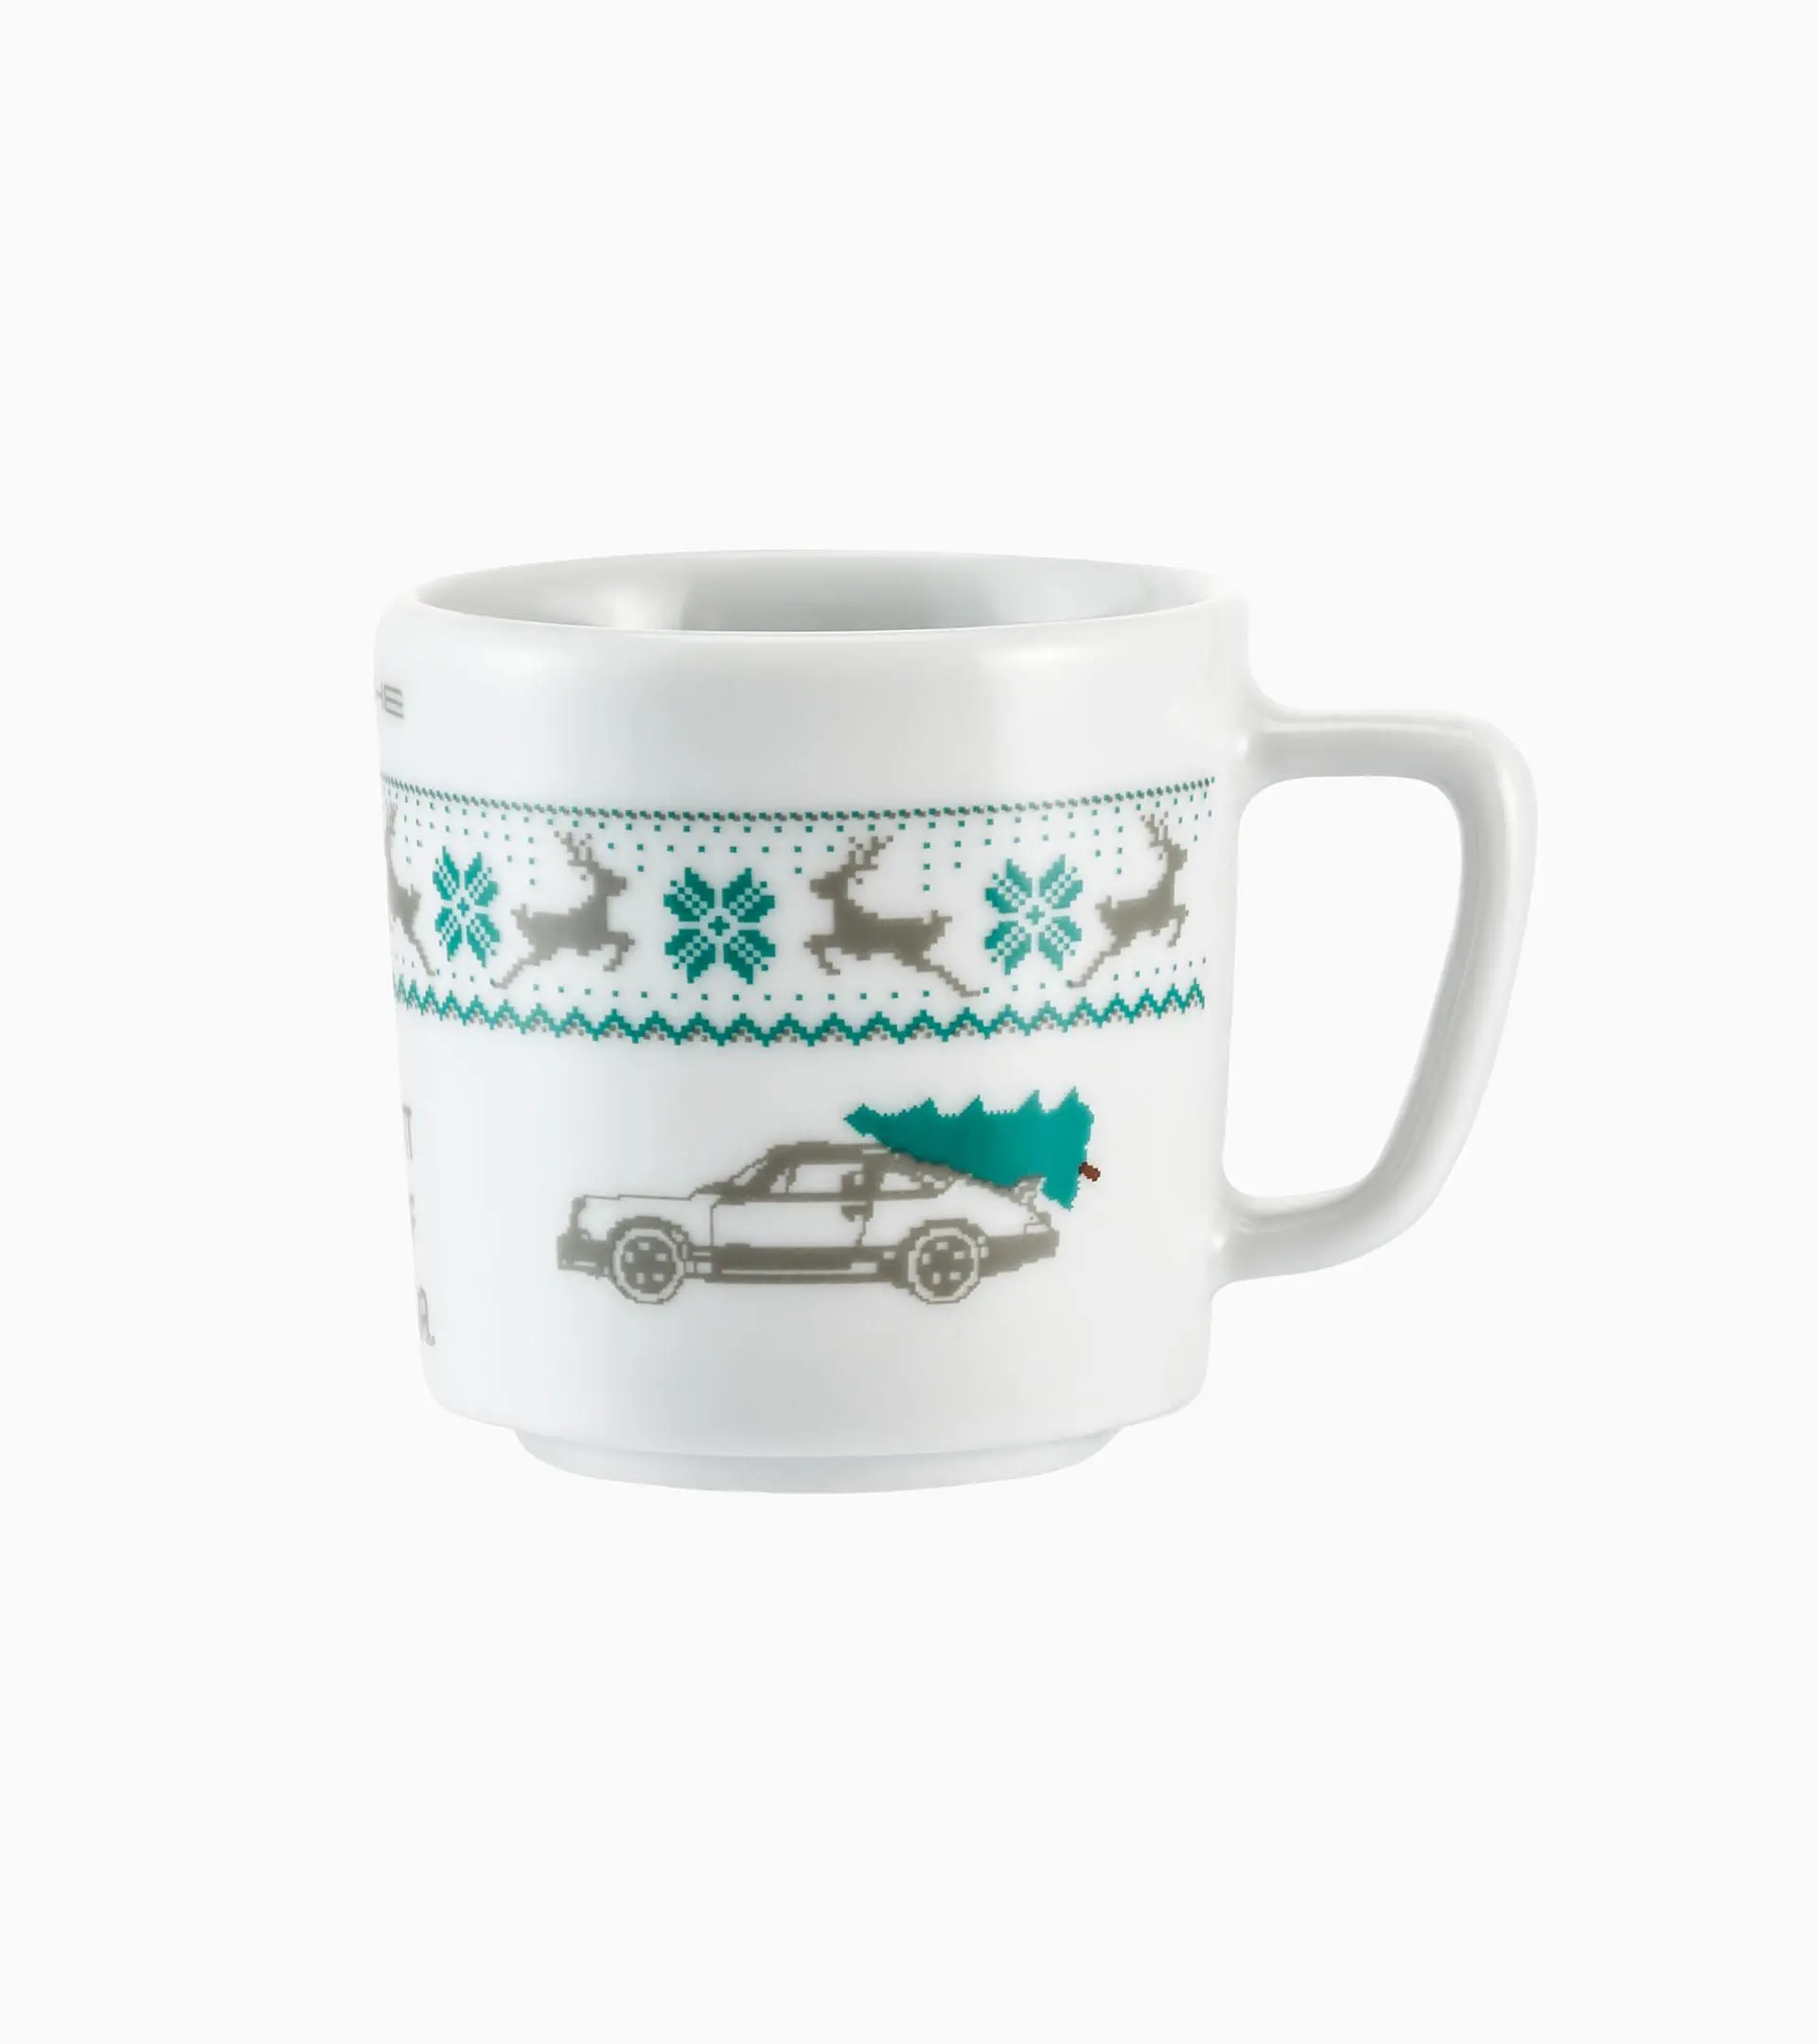 Espresso Cup–Porcelain, sp0010651